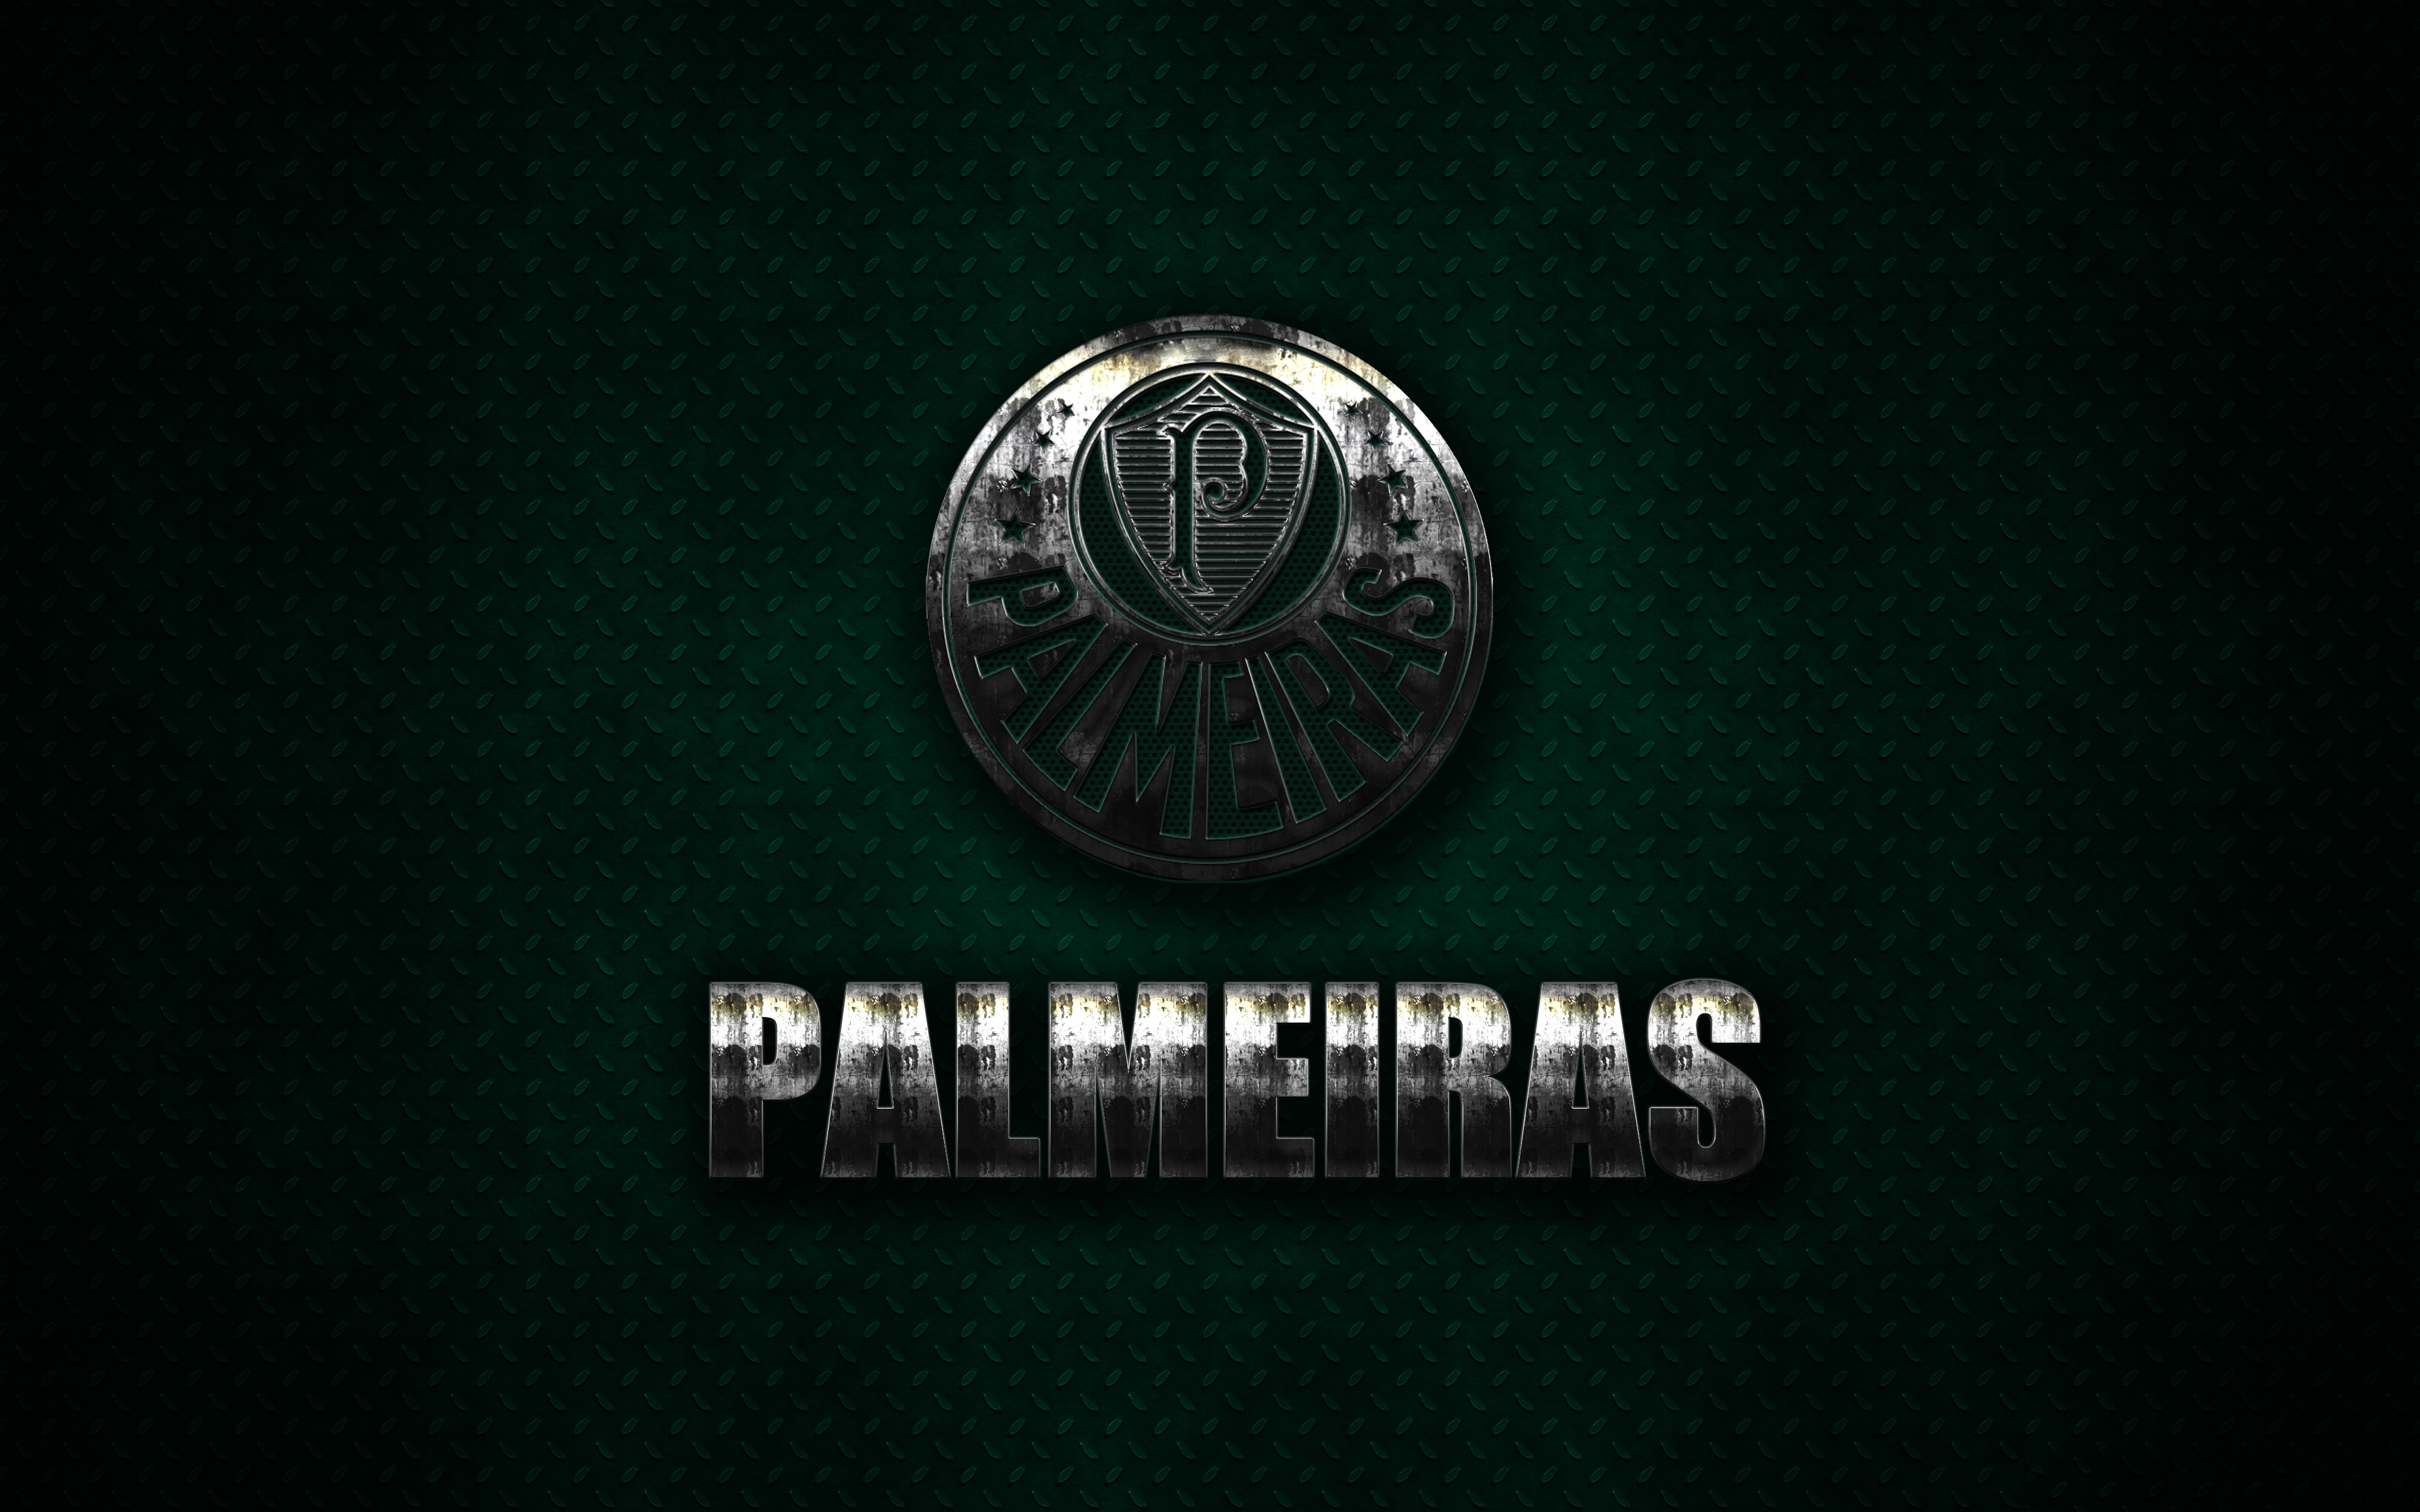 Sports Sociedade Esportiva Palmeiras HD Wallpaper | Background Image